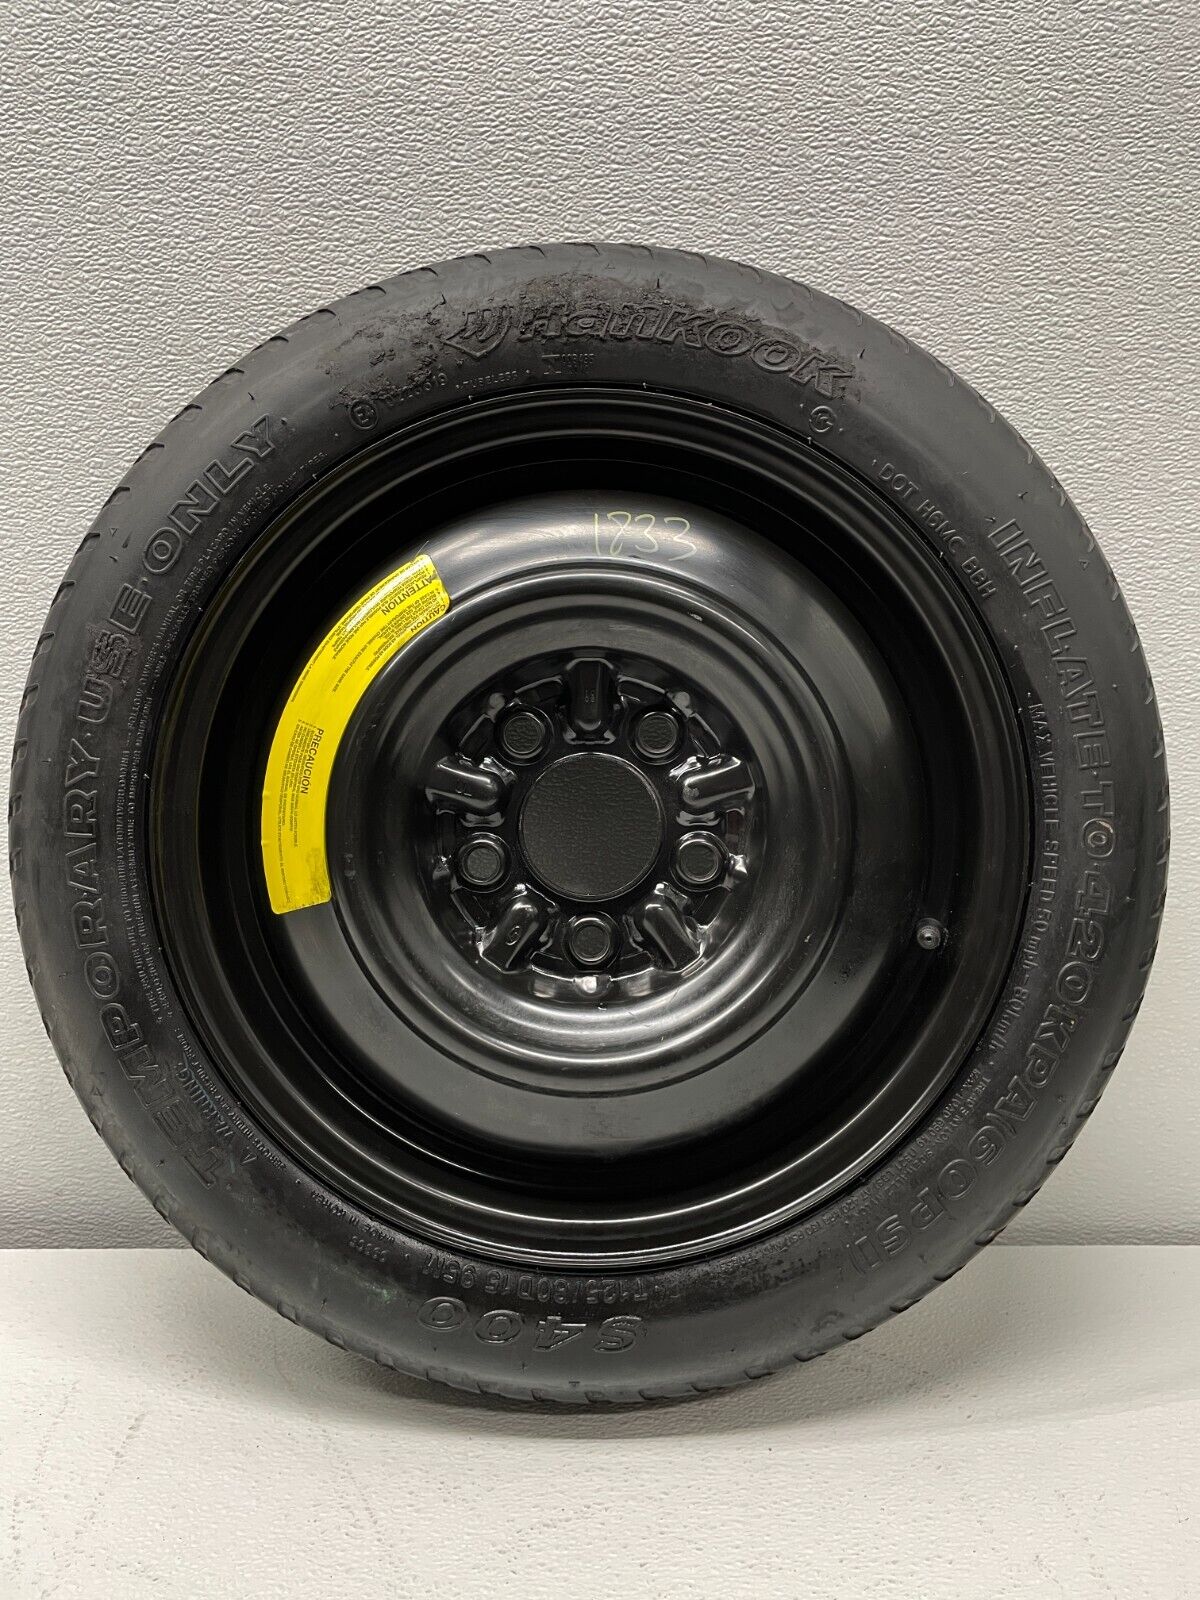 2011-2020 Hyundai Elantra Spare Donut Tire Wheel Rim OEM USED